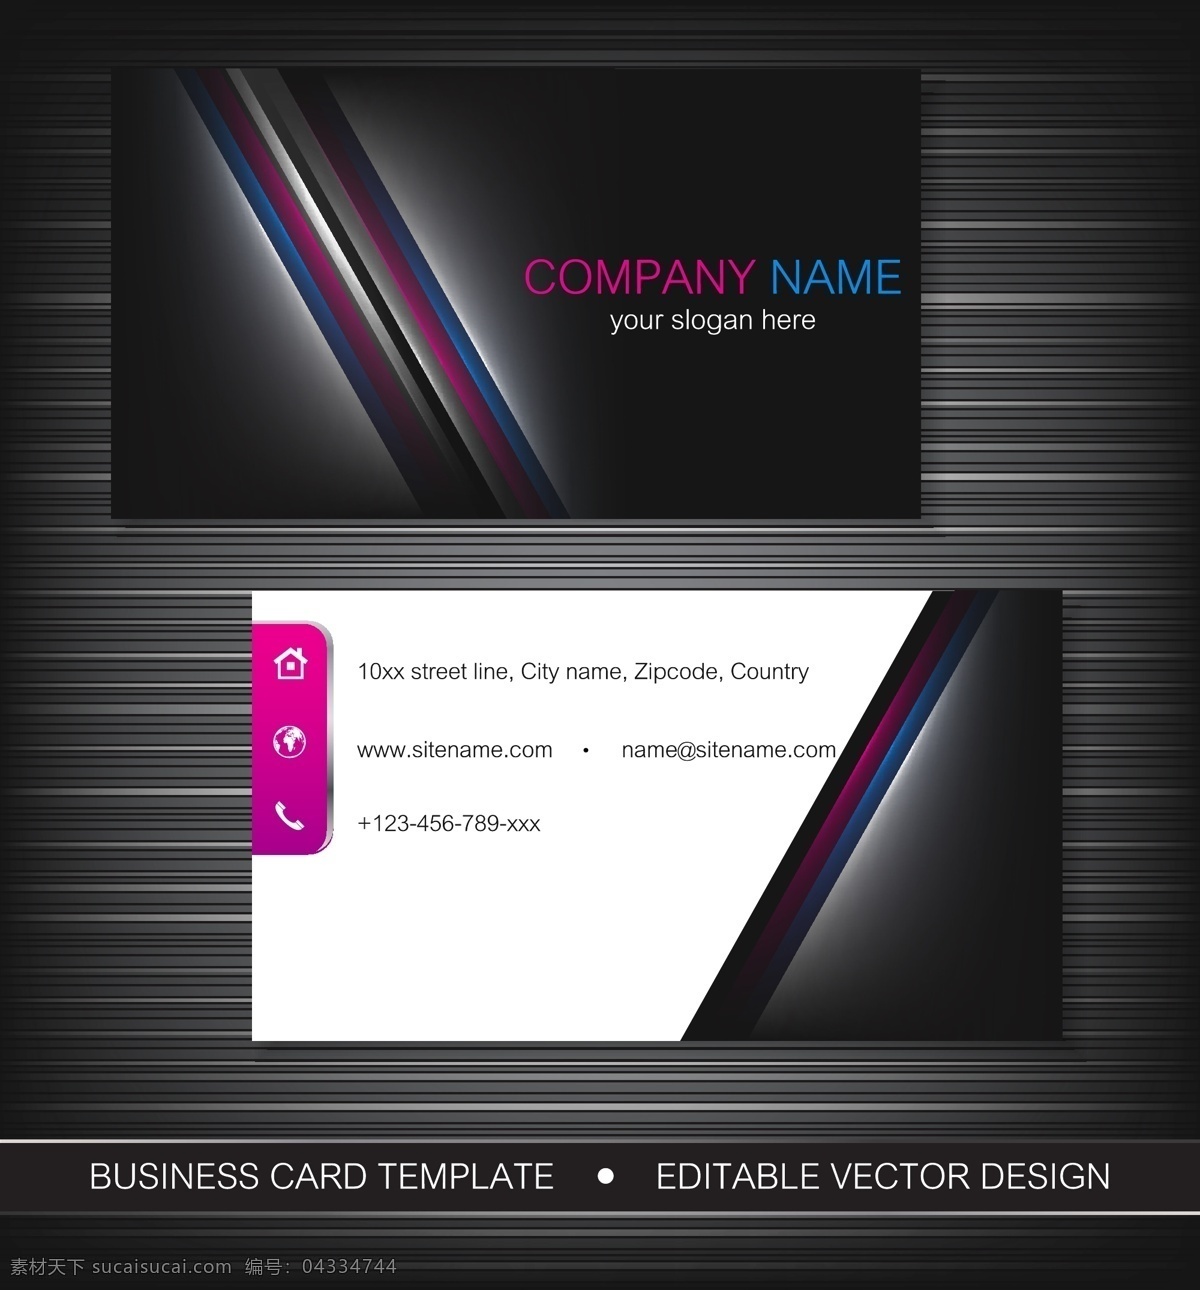 黑色 企业 名片 模板 矢量 卡片 背景 公司 商务名片 简洁名片 高雅名片 高级名片 矢量素材 红色